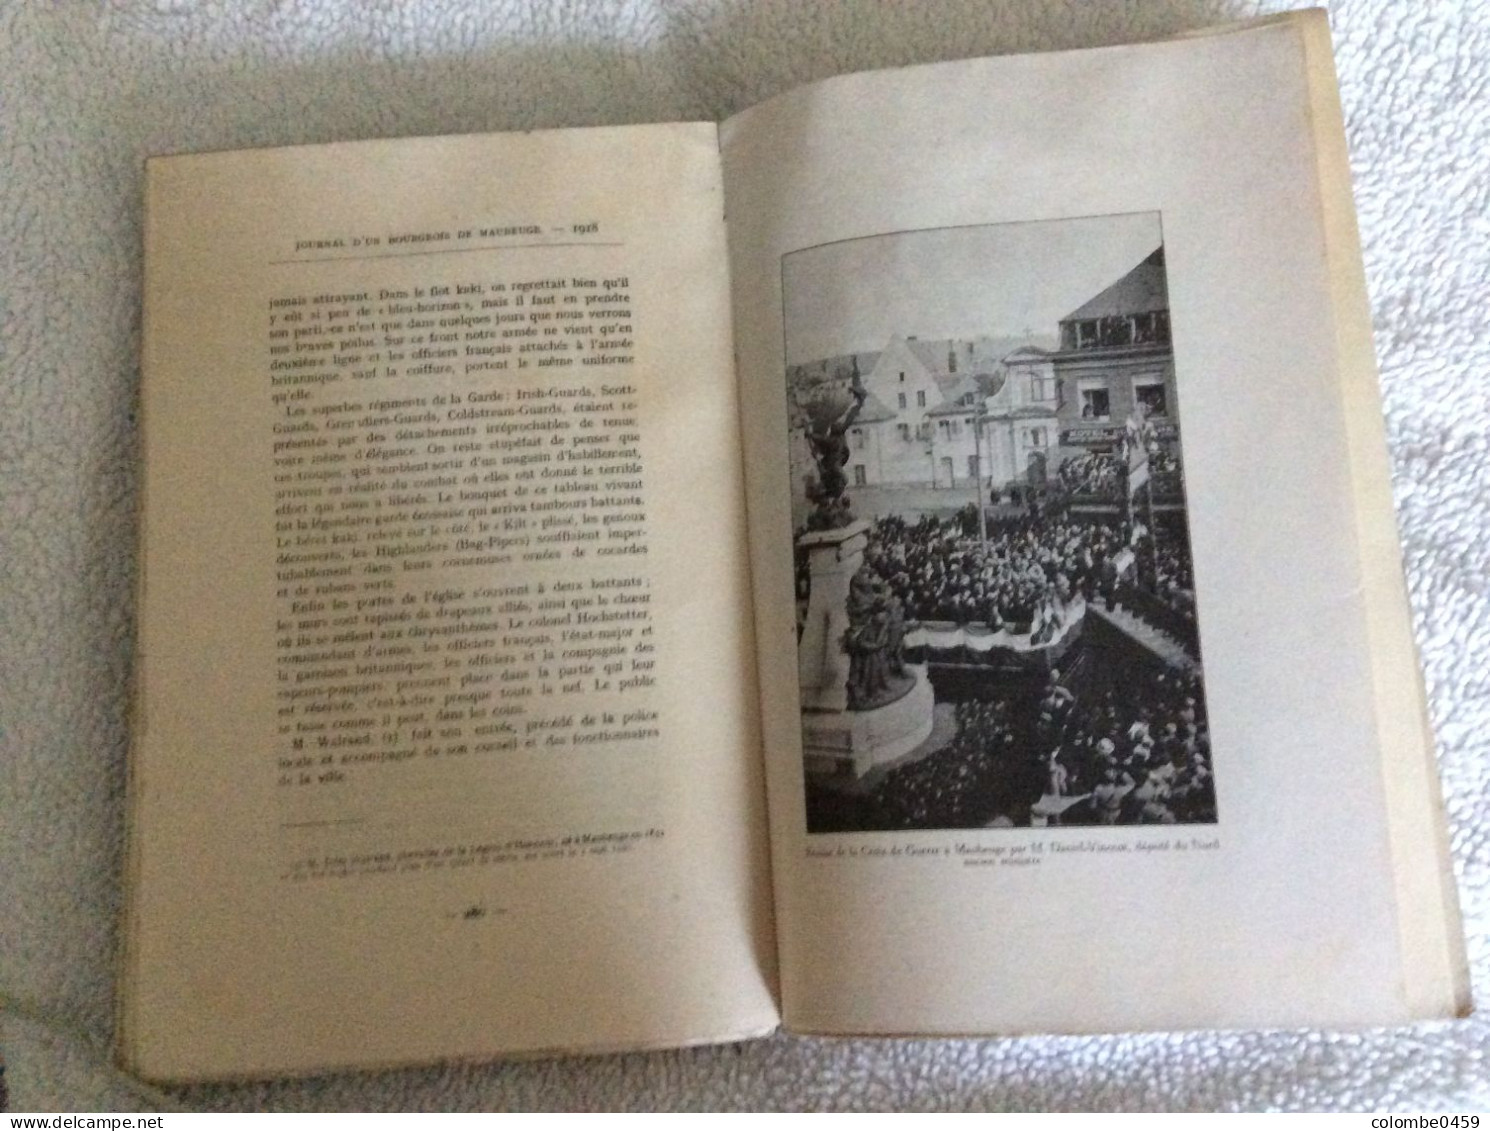 Ancien livre "Journal d'un Bourgeois de Maubeuge Avant pendant le Siège et l'Occupation Allemande 1914-1918